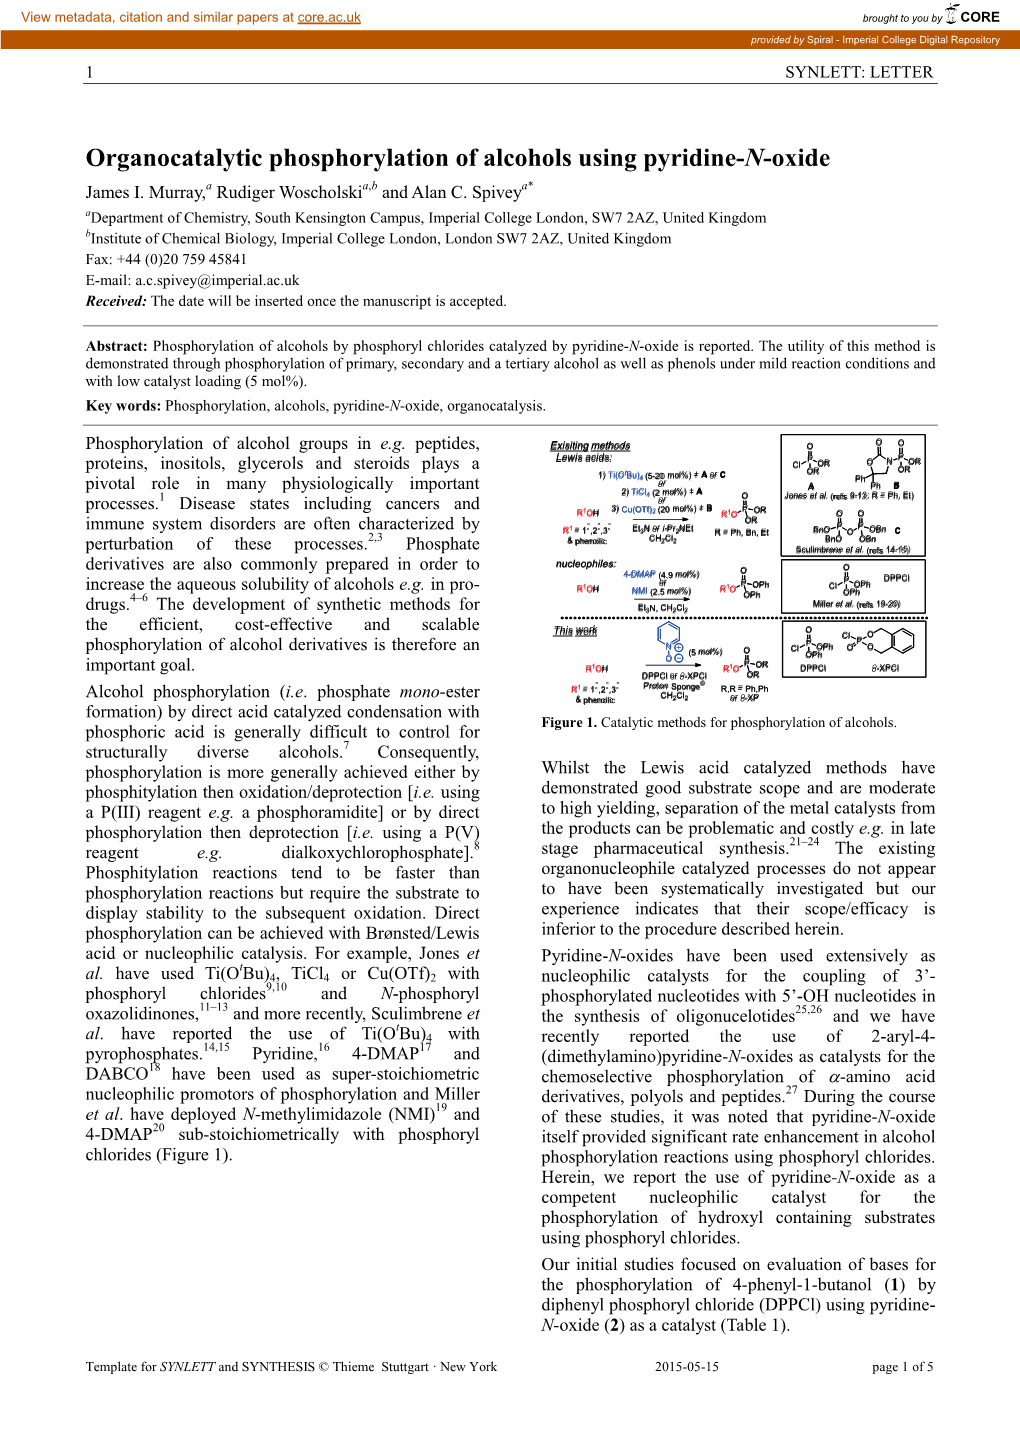 Organocatalytic Phosphorylation of Alcohols Using Pyridine-N-Oxide James I